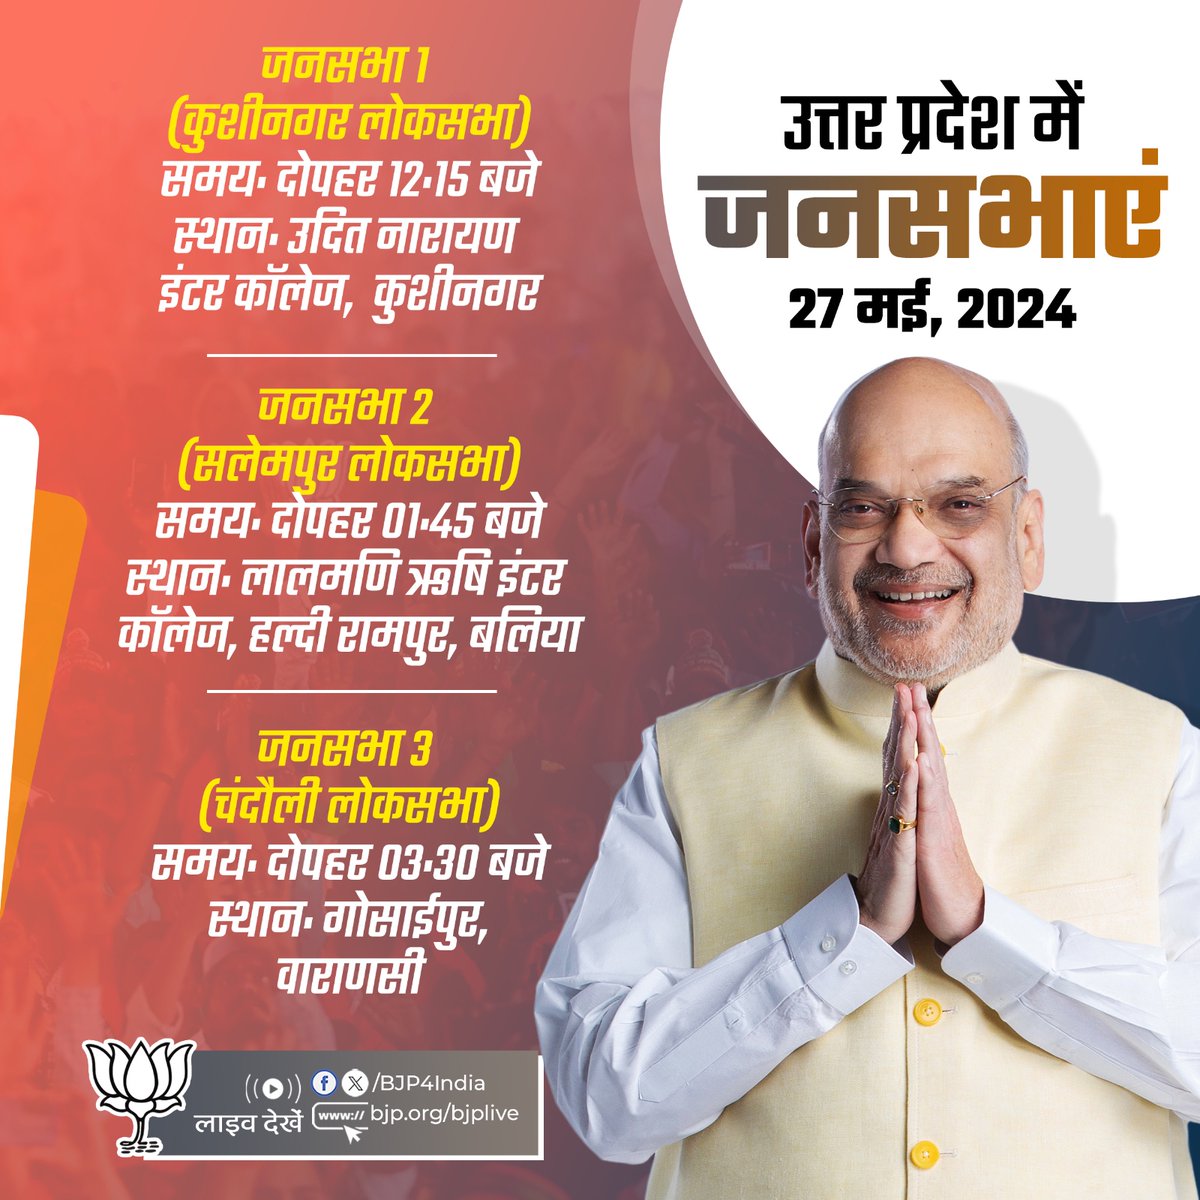 केंद्रीय गृह एवं सहकारिता मंत्री श्री @AmitShah की 27 मई, 2024 को उत्तर प्रदेश में जनसभाएं। लाइव देखें: 📺x.com/BJP4India 📺facebook.com/BJP4India 📺youtube.com/BJP4India 📺bjp.org/bjplive